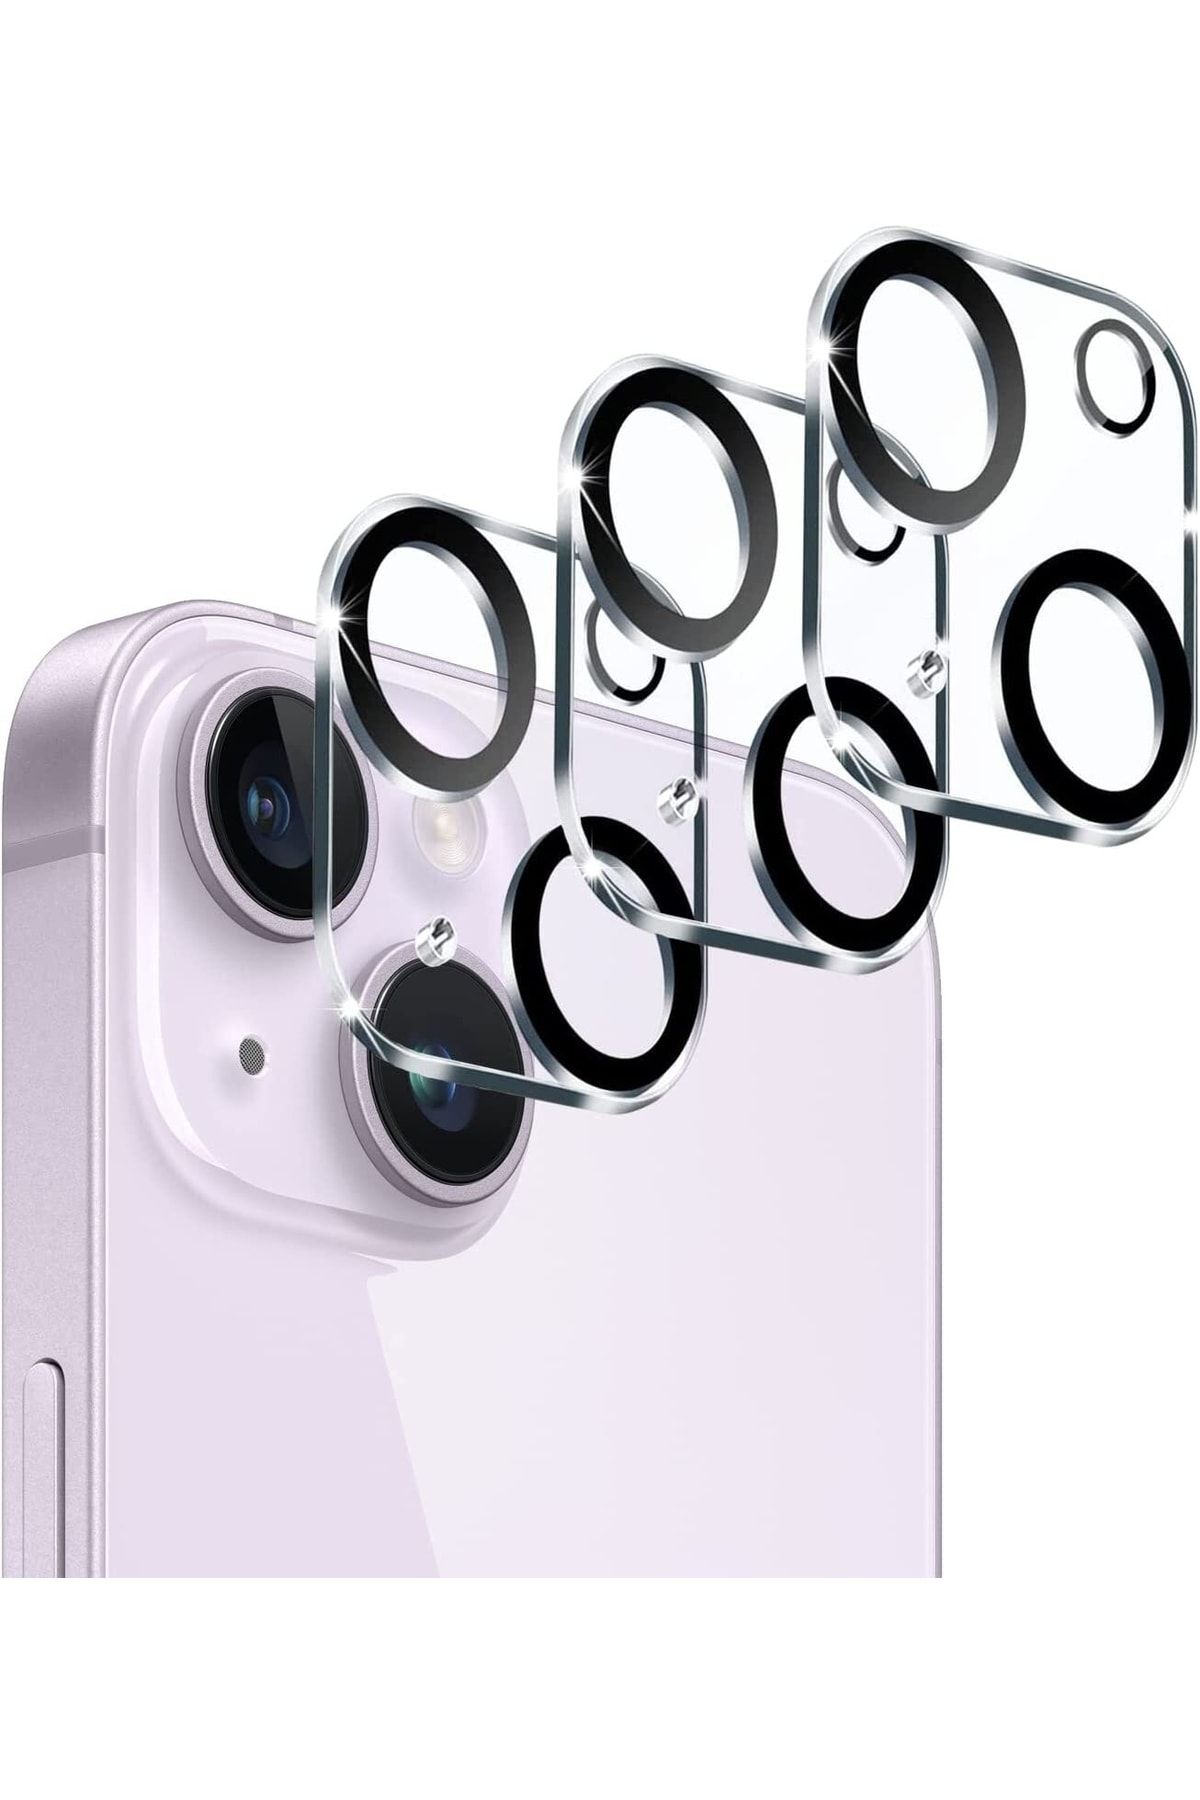 HyperAge Iphone 14 & Iphone 14 Plus Kamera Koruyucu 9 Kat Sertleştirilmiş Hd Kamera Lens Ve Yüzey Koruma